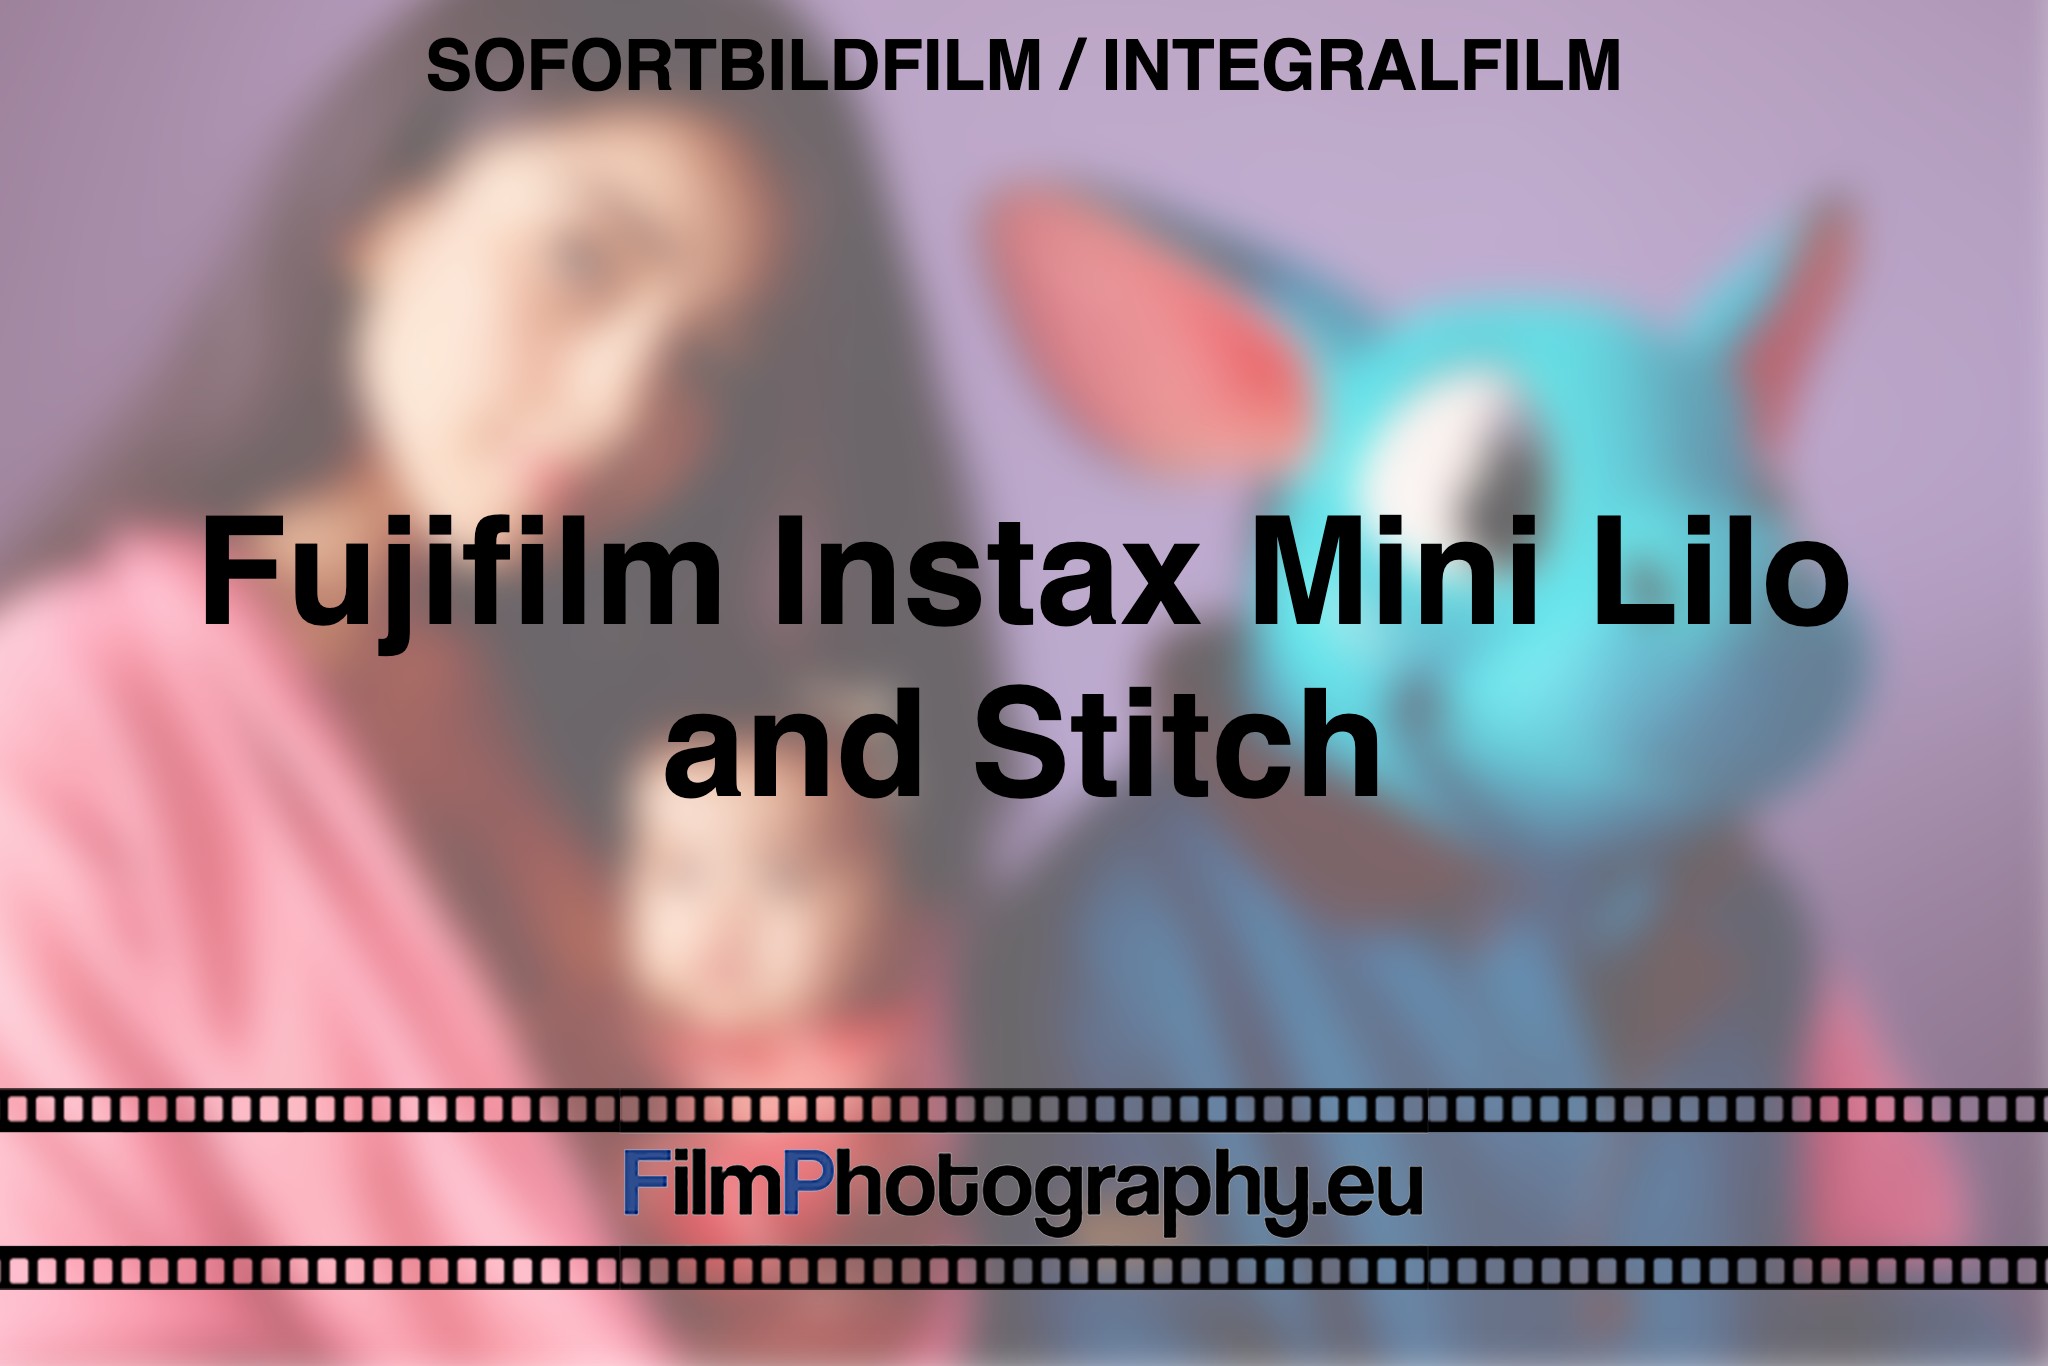 fujifilm-instax-mini-lilo-and-stitch-sofortbildfilm-integralfilm-fp-bnv